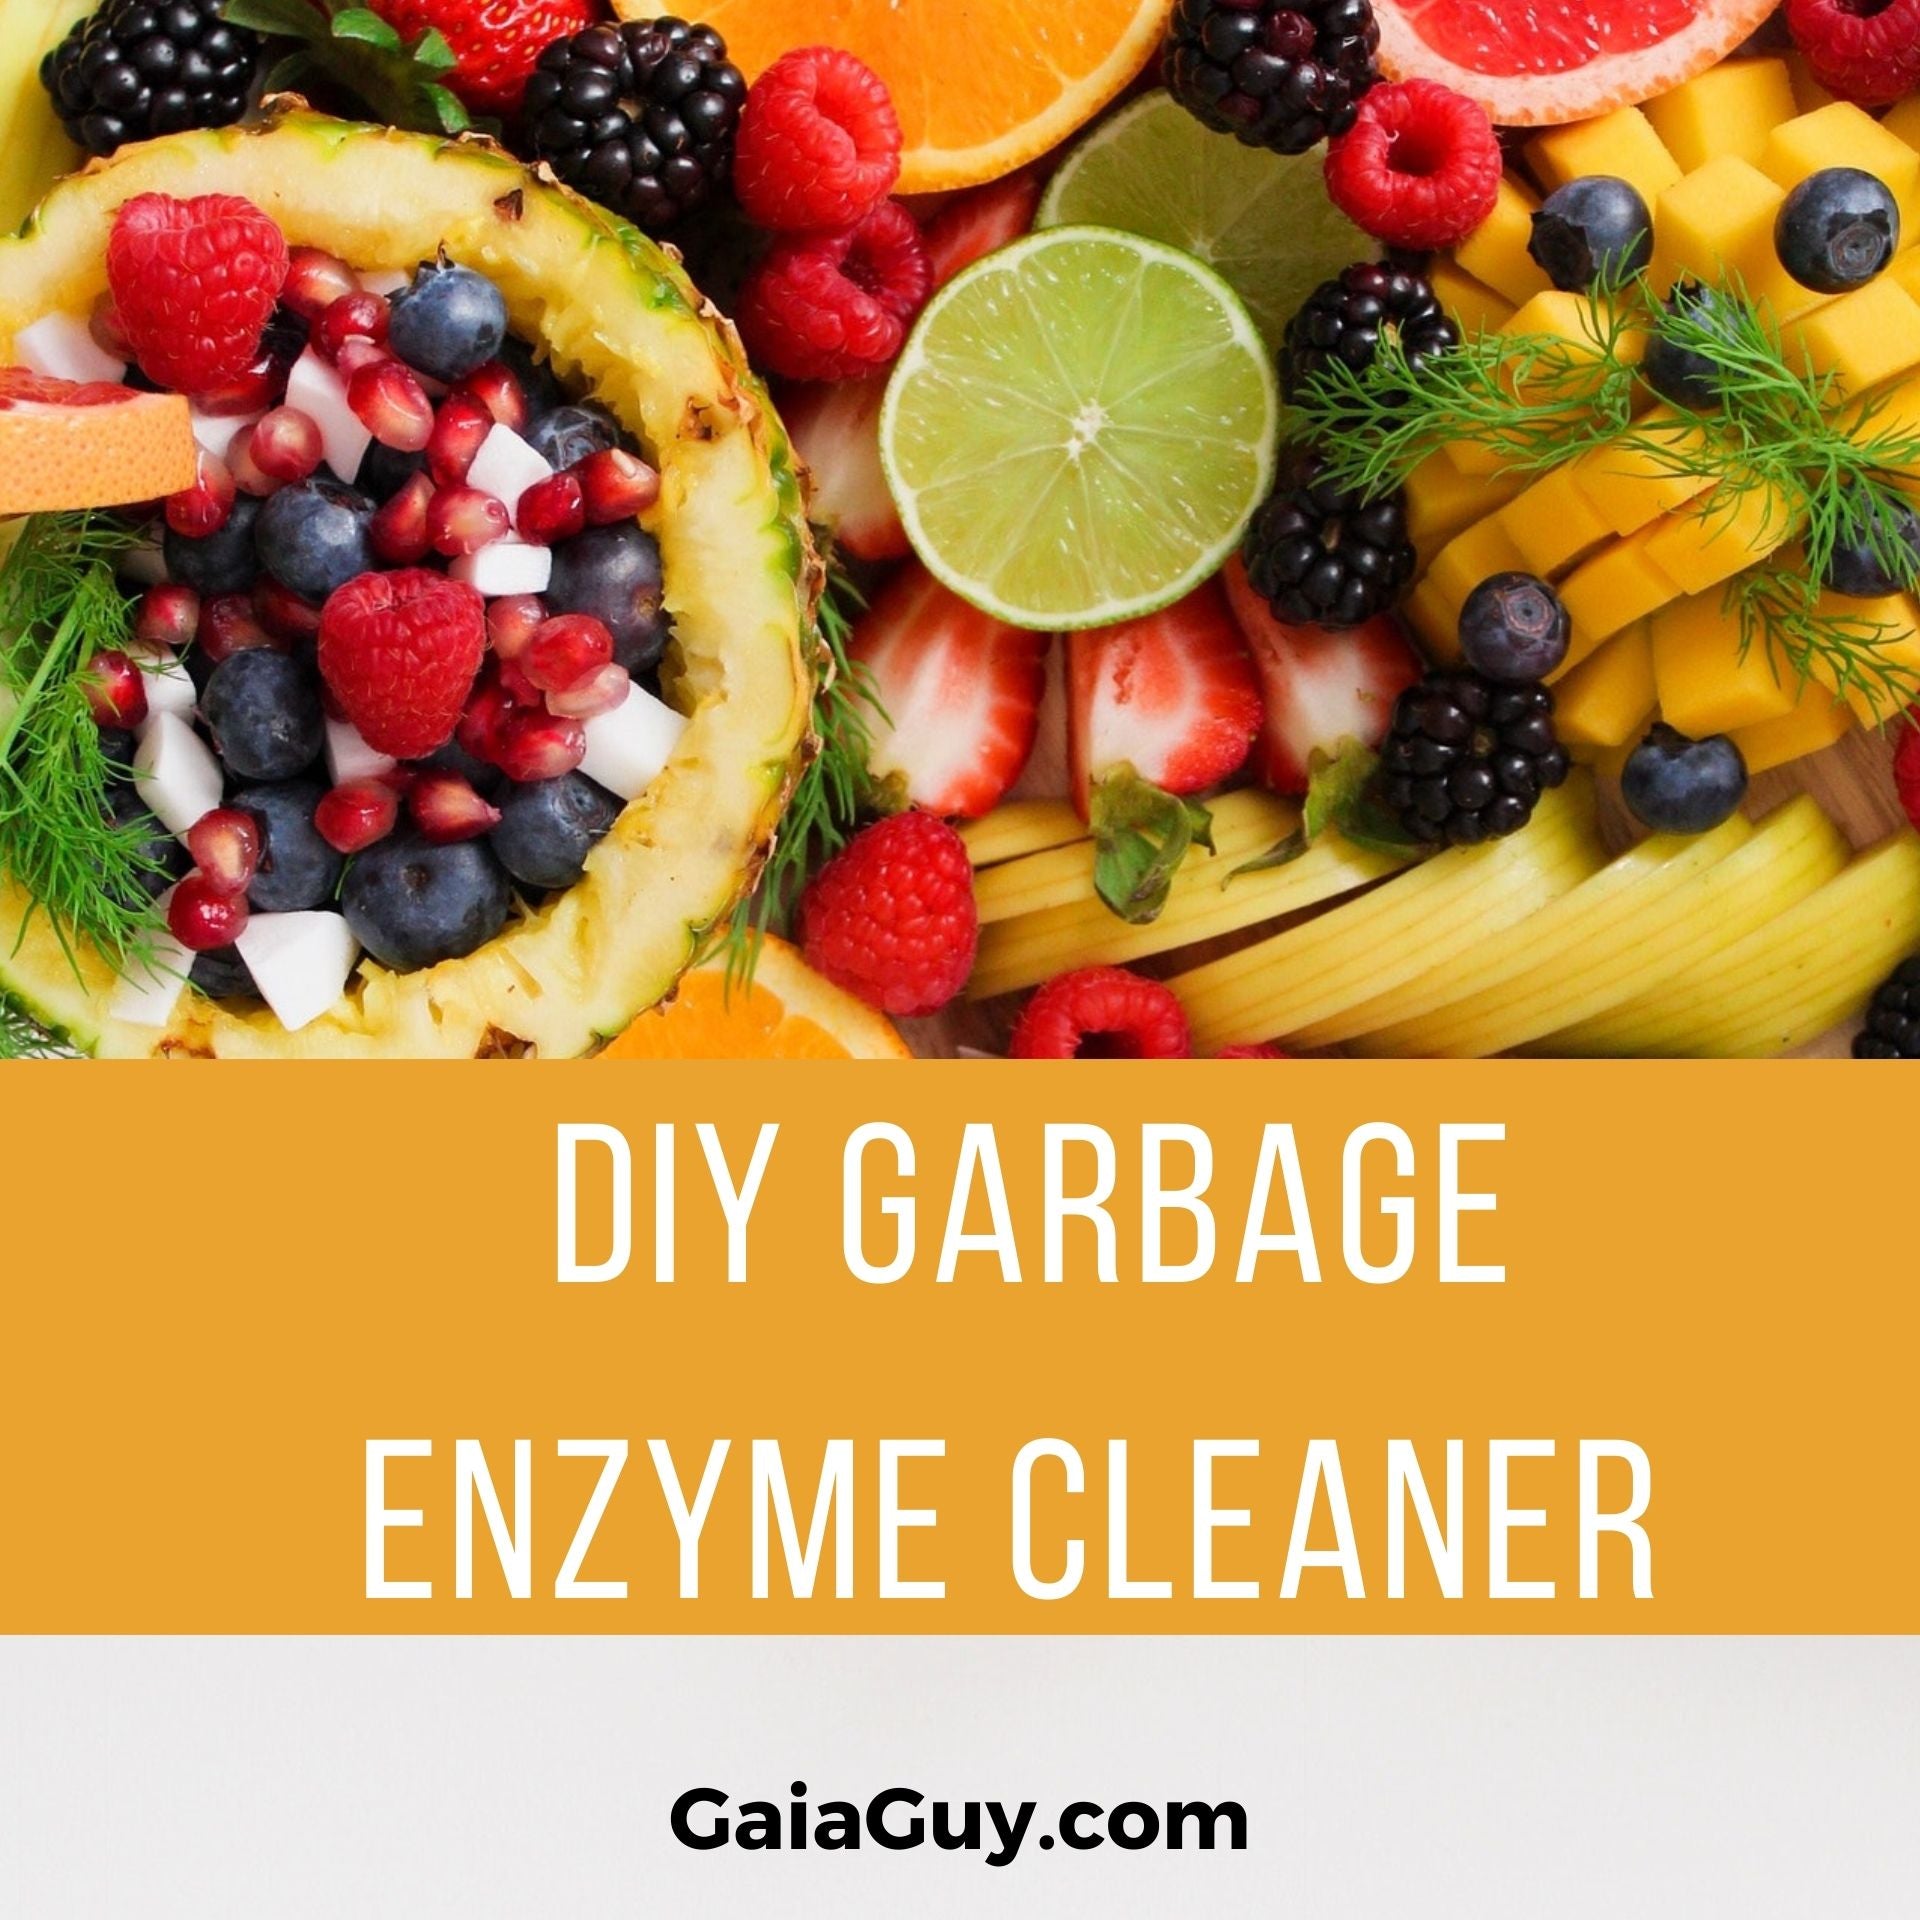 diy garbage enzyme cleaner